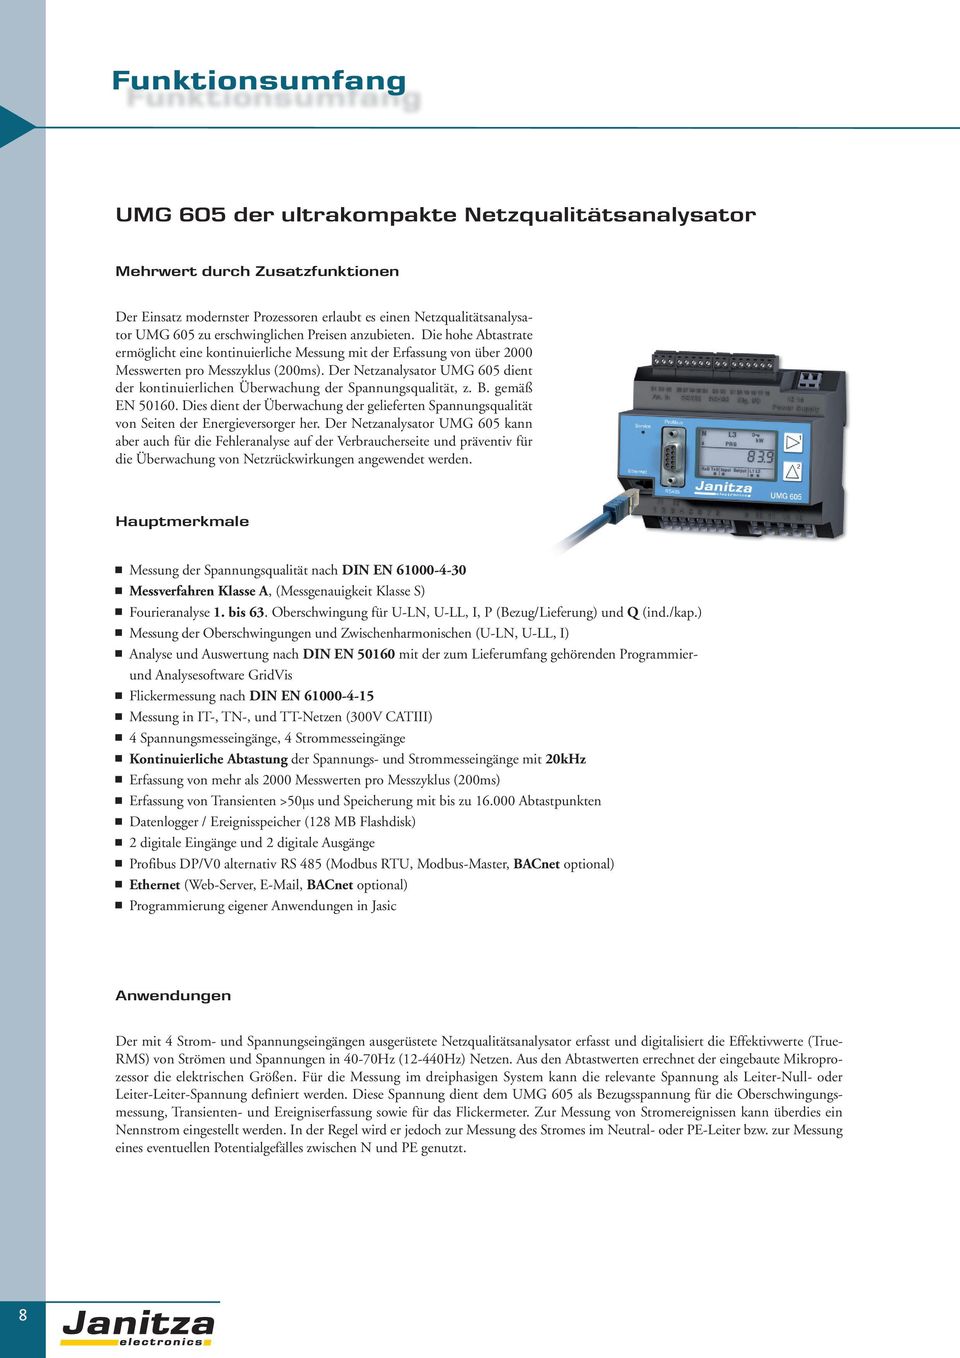 Der Netzanalysator UMG 605 dient der kontinuierlichen Überwachung der Spannungsqualität, z. B. gemäß EN 50160.